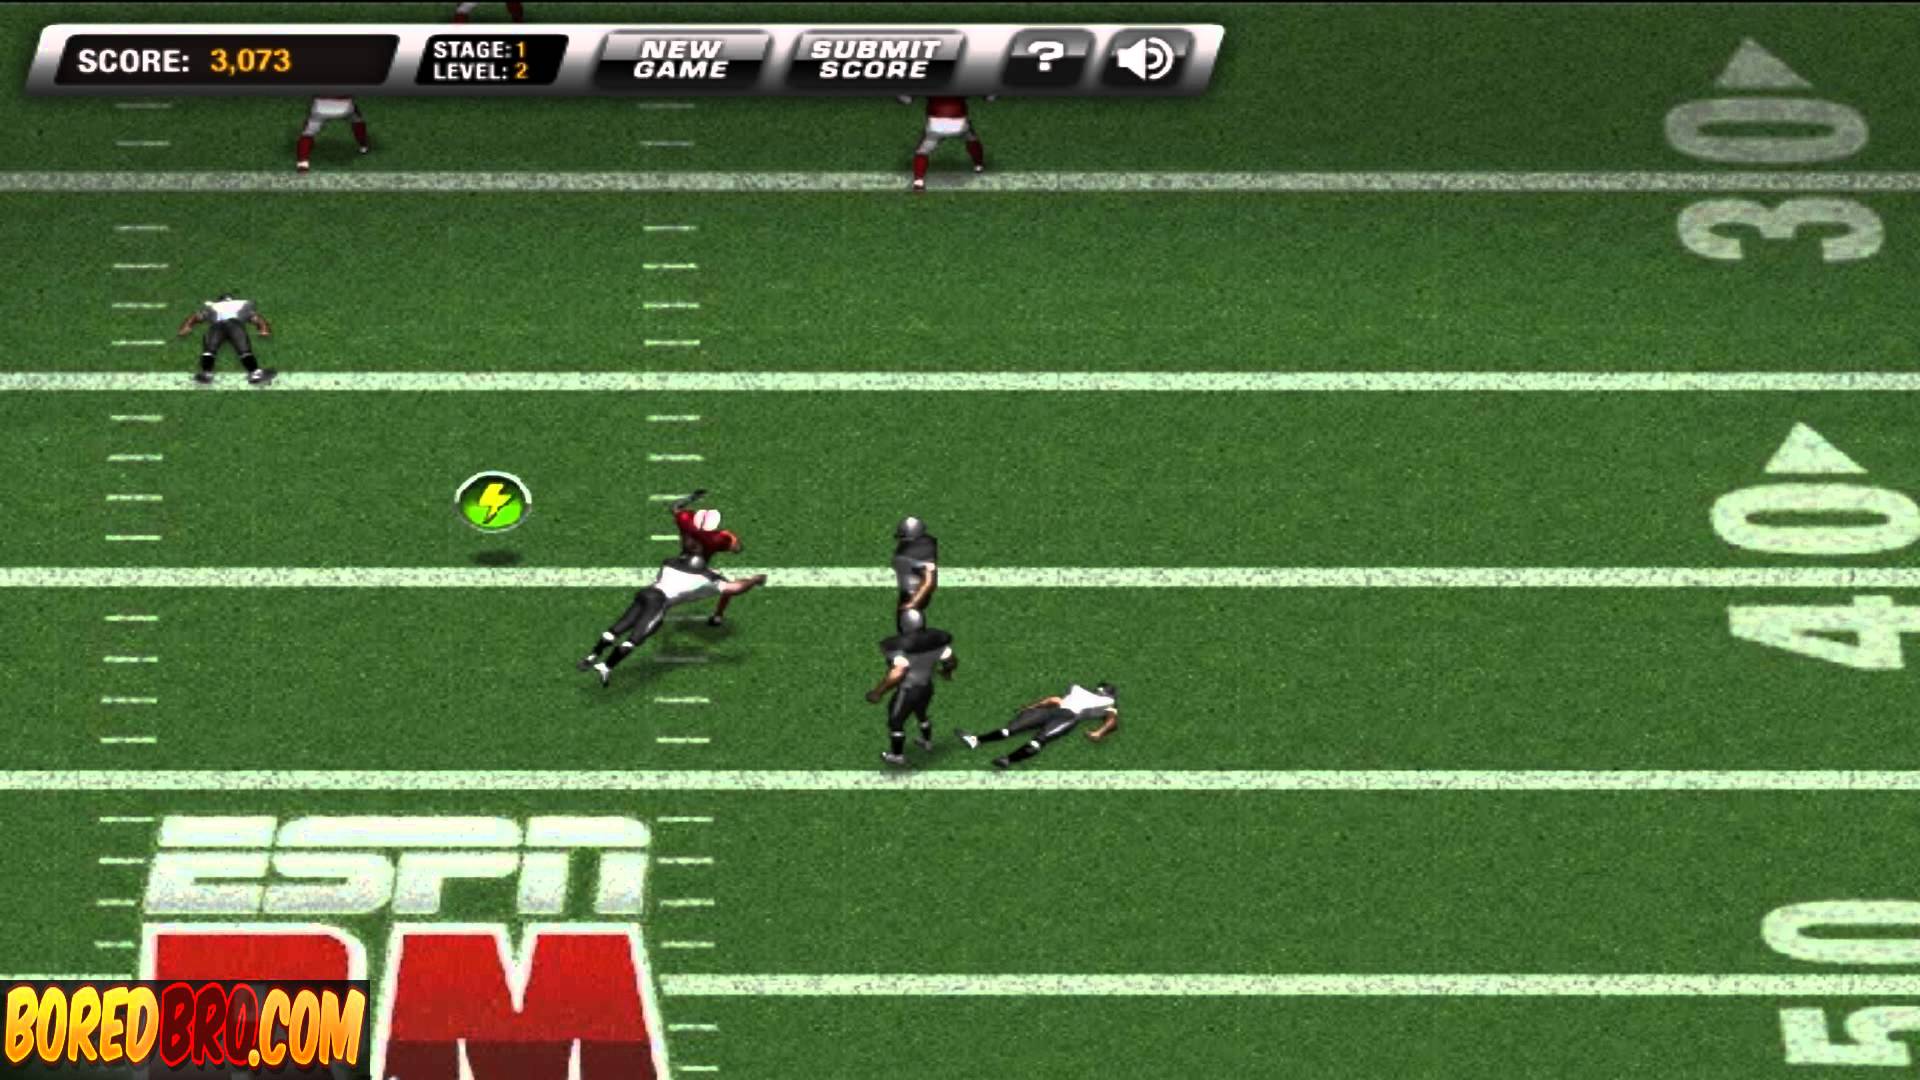 Play Return Man 2 Online - masterpiece from ESPN Arcade